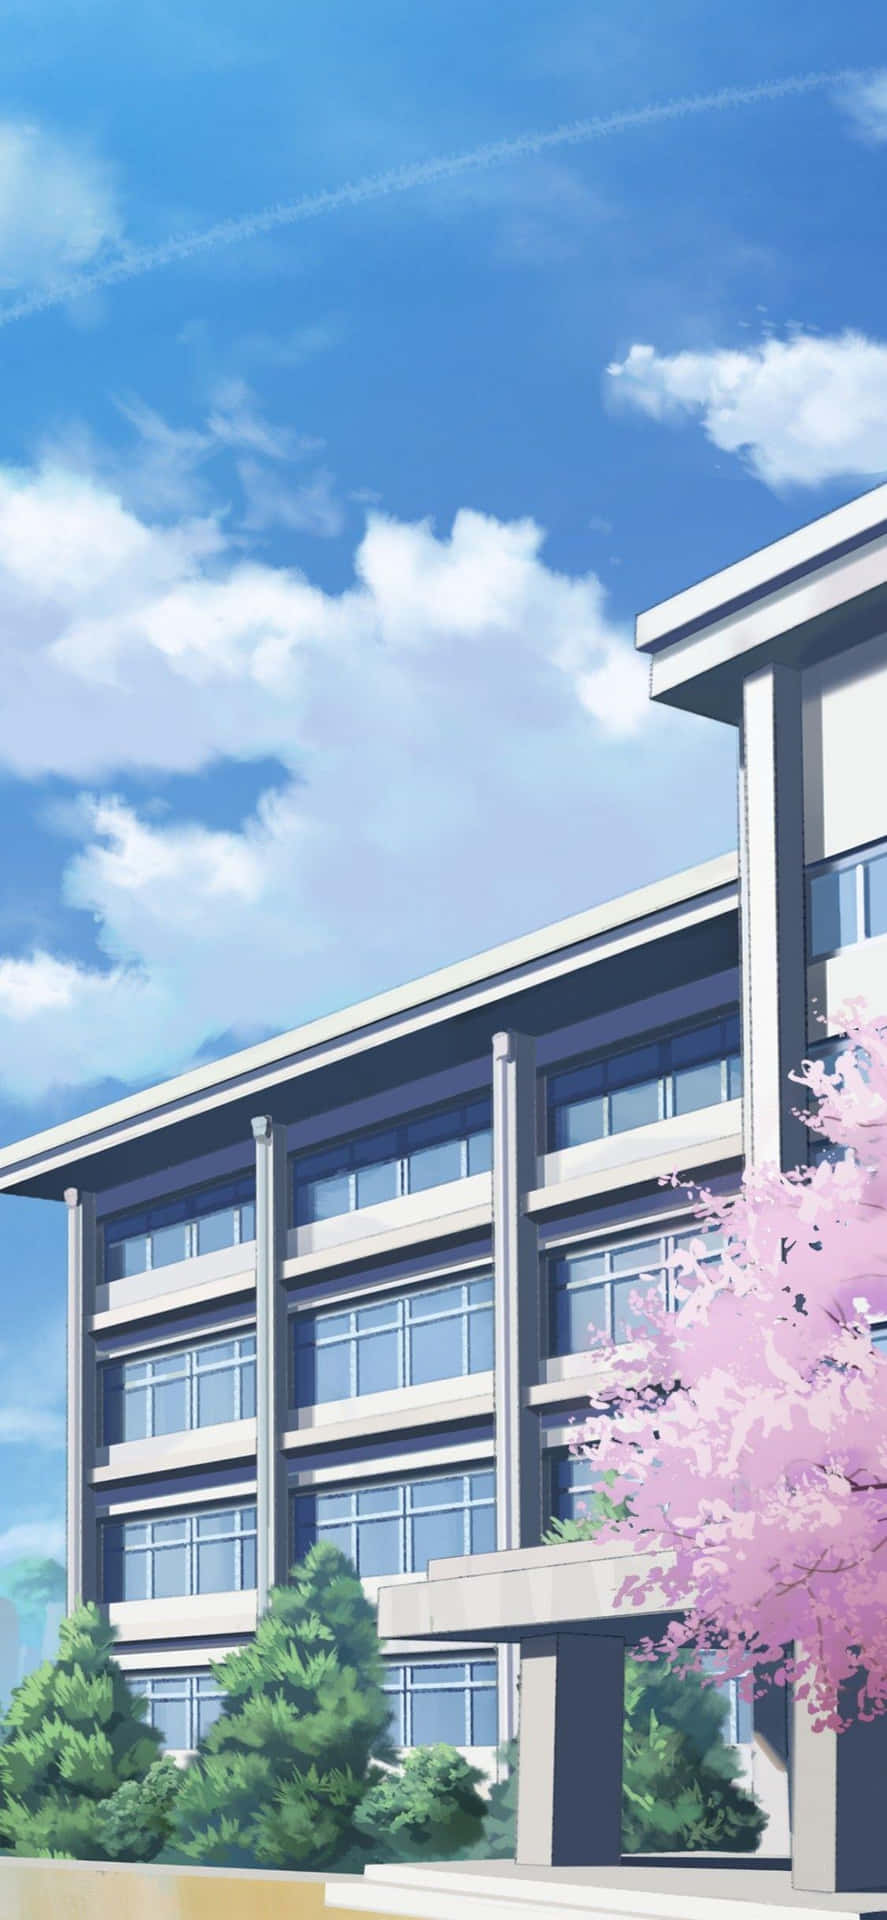 Anime Skolebygning Sakura Udsigt Wallpaper